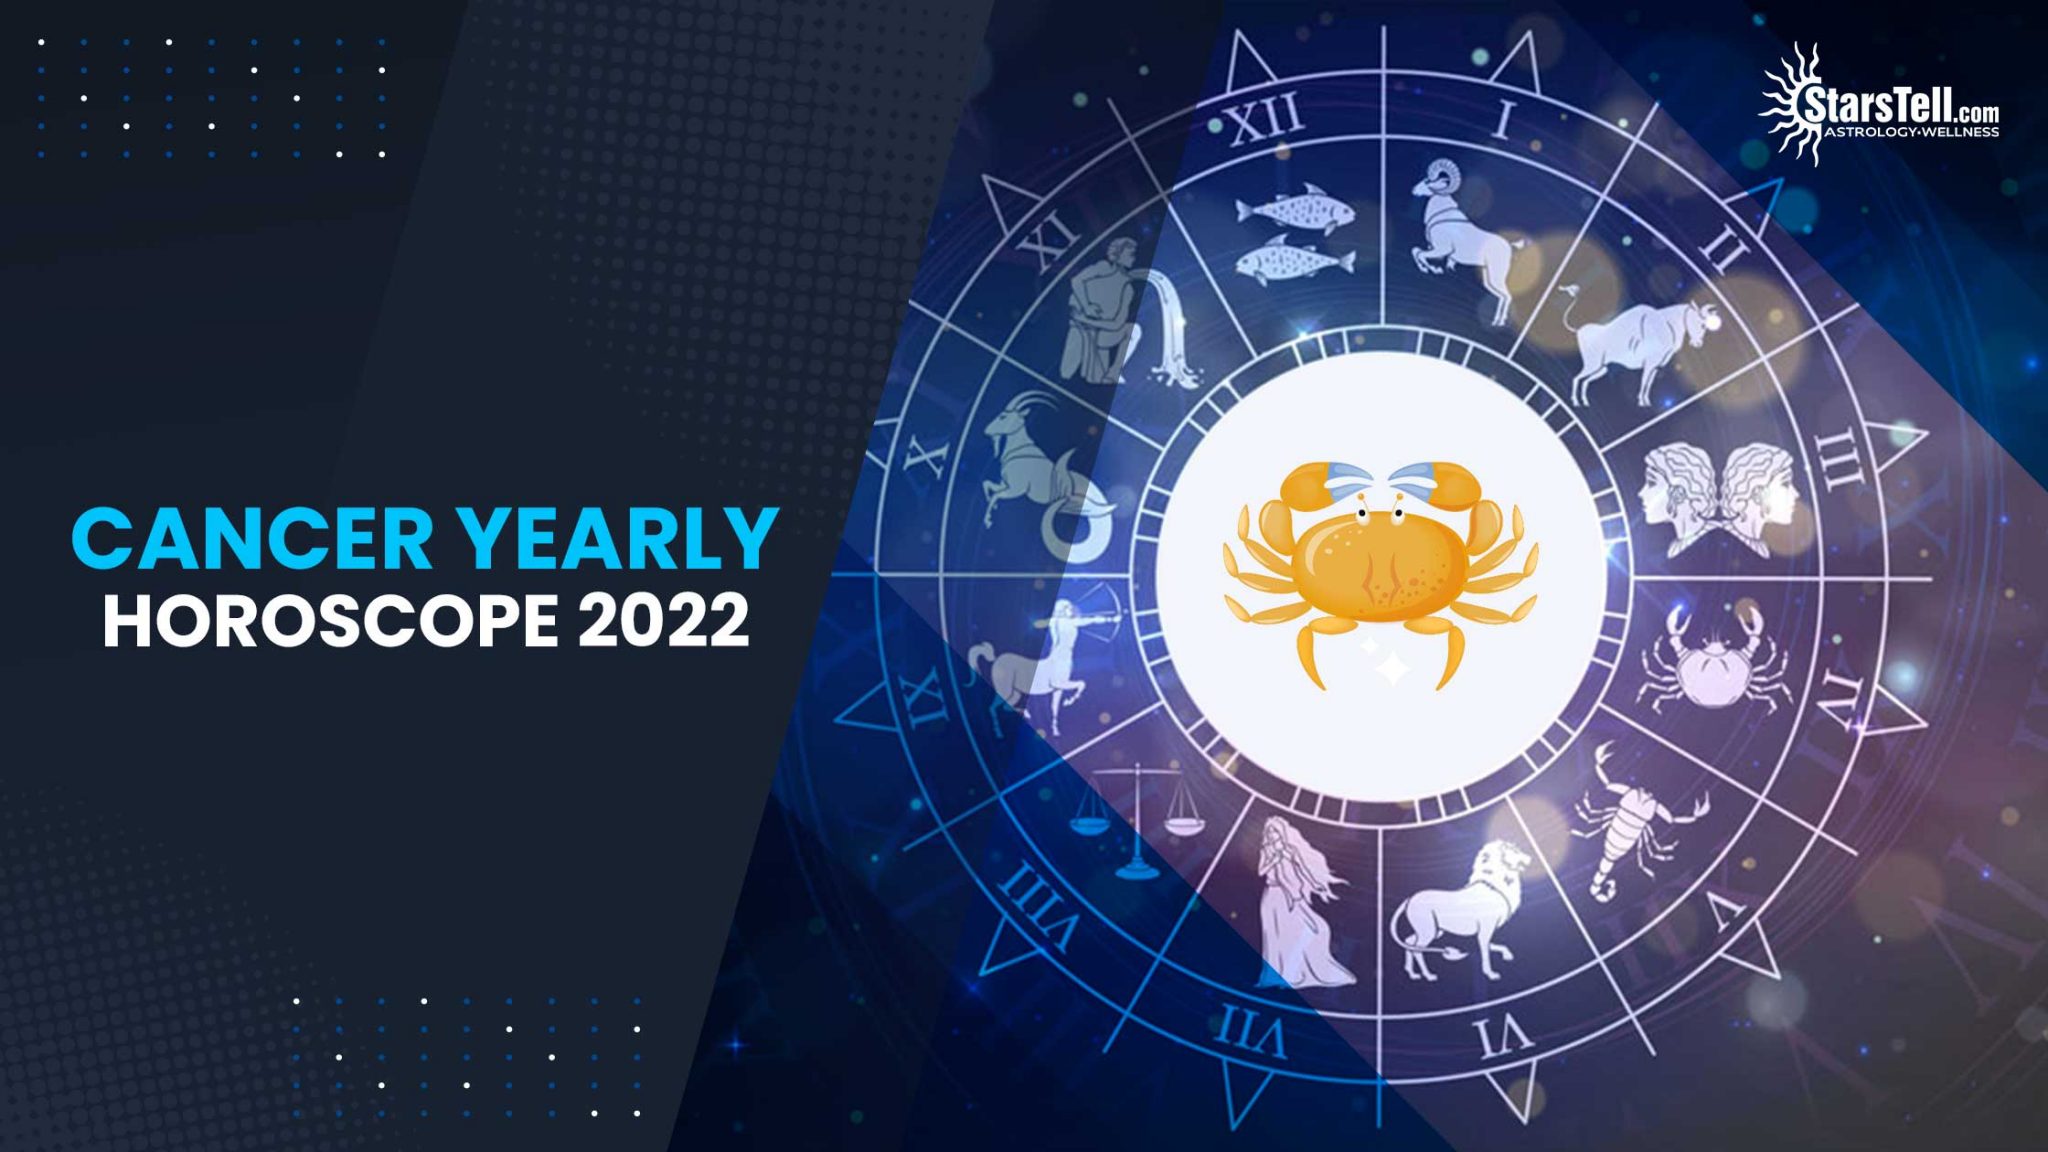 eptember 11 horoscope 2022